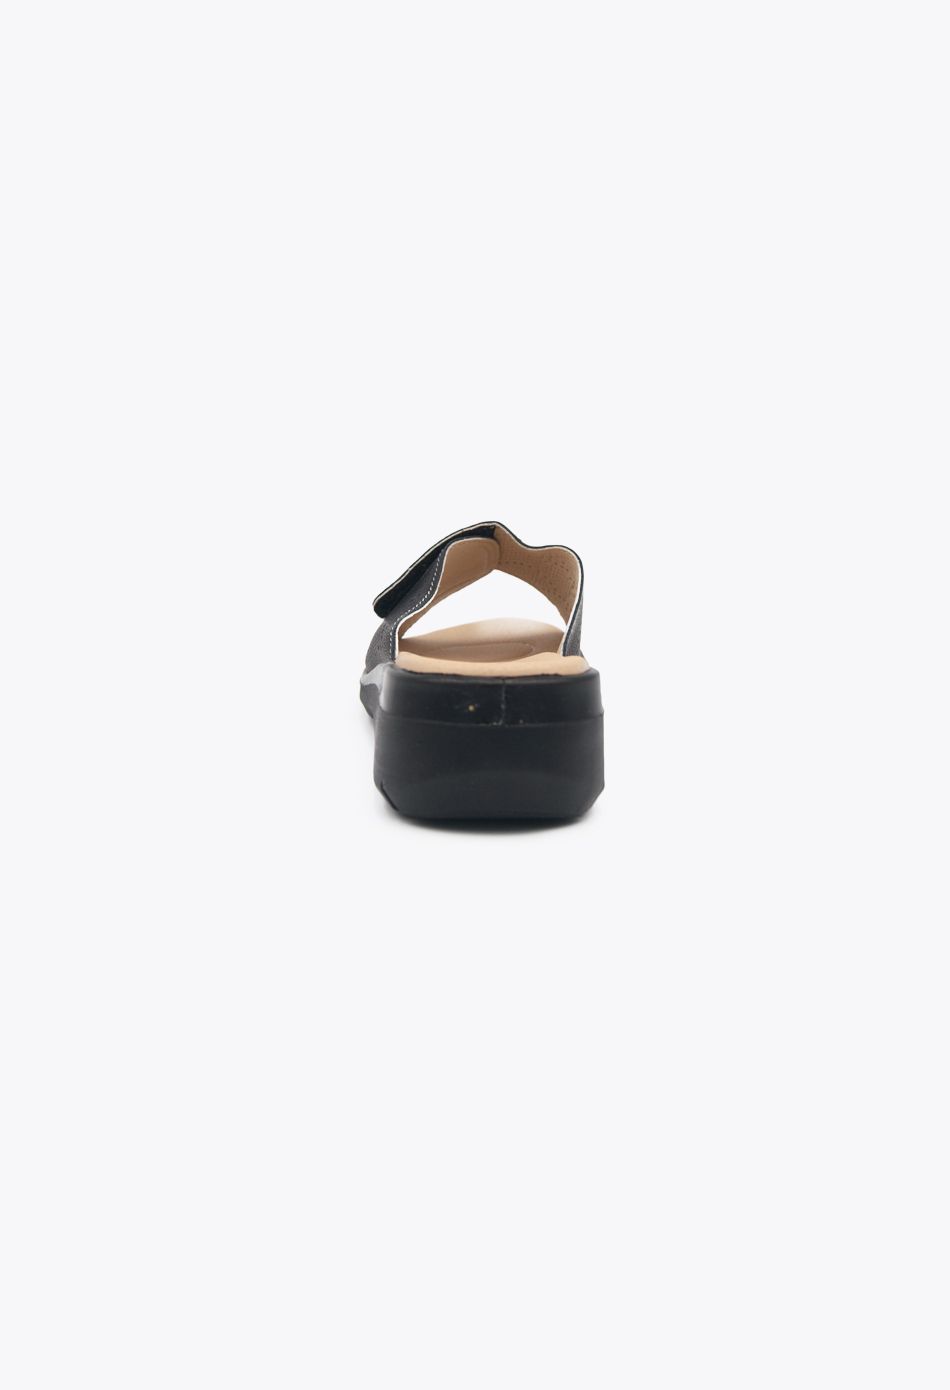 Comfort Ανατομικά Παντόφλες με Χαμηλό Πέλμα μαύρο / RH556-black ANATOMIKΑ joya.gr